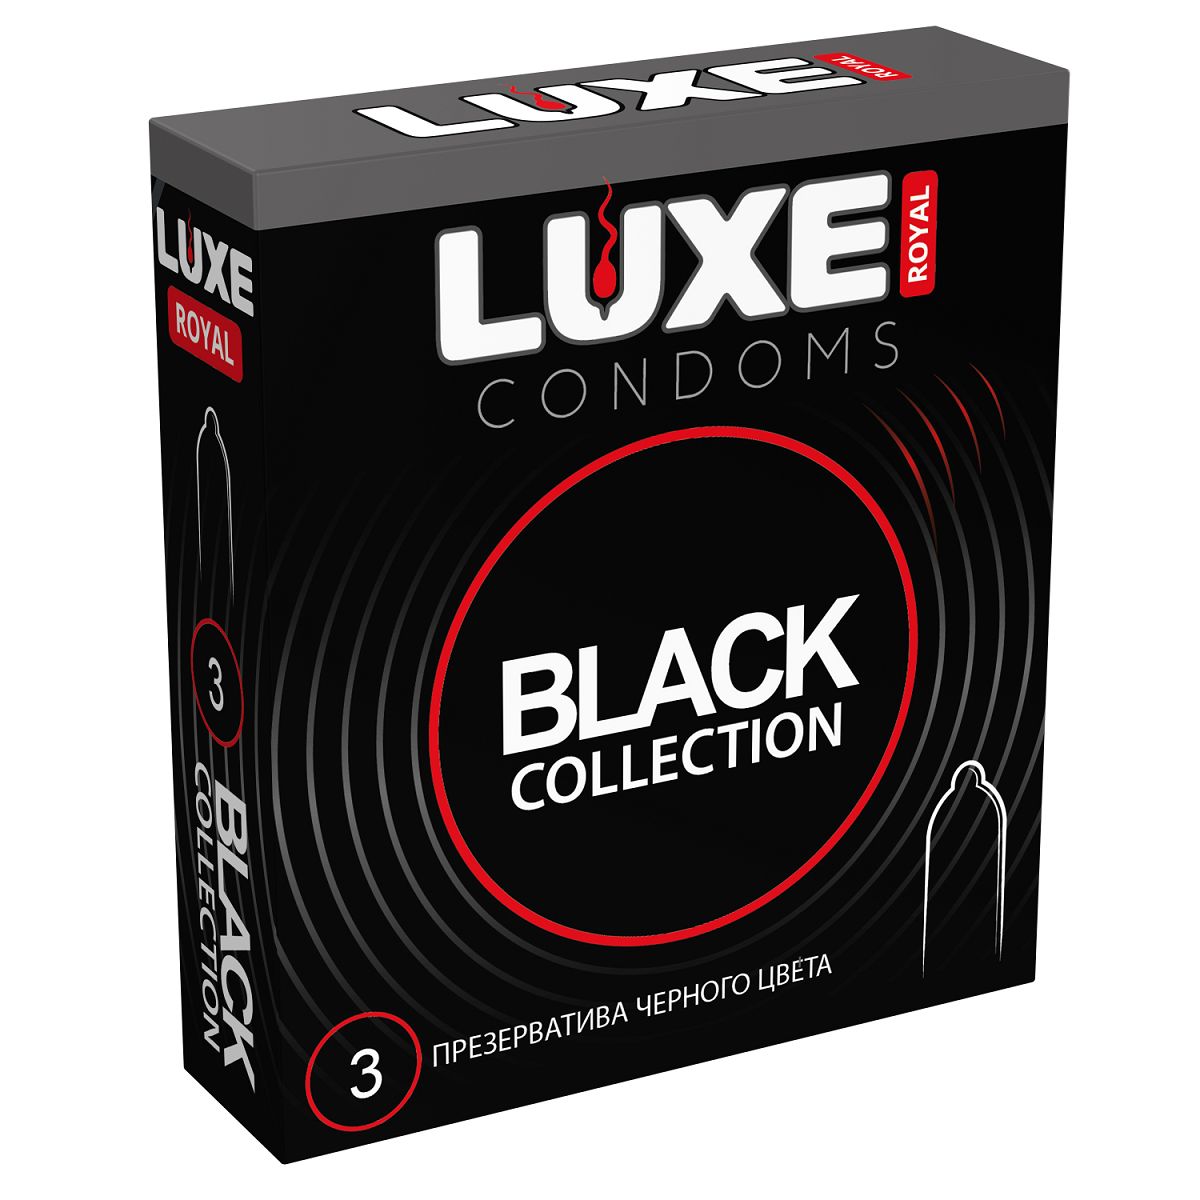 Высококачественные гладкие презервативы черного цвета. Максимальное разнообразие и новые ощущения в ваших отношениях. В фирменной упаковке содержится 3 черных презерватива из тонкого латекса. Ширина - 52 мм.<br> Толщина стенок - 0,06 мм.<br> В упаковке - 3 шт.